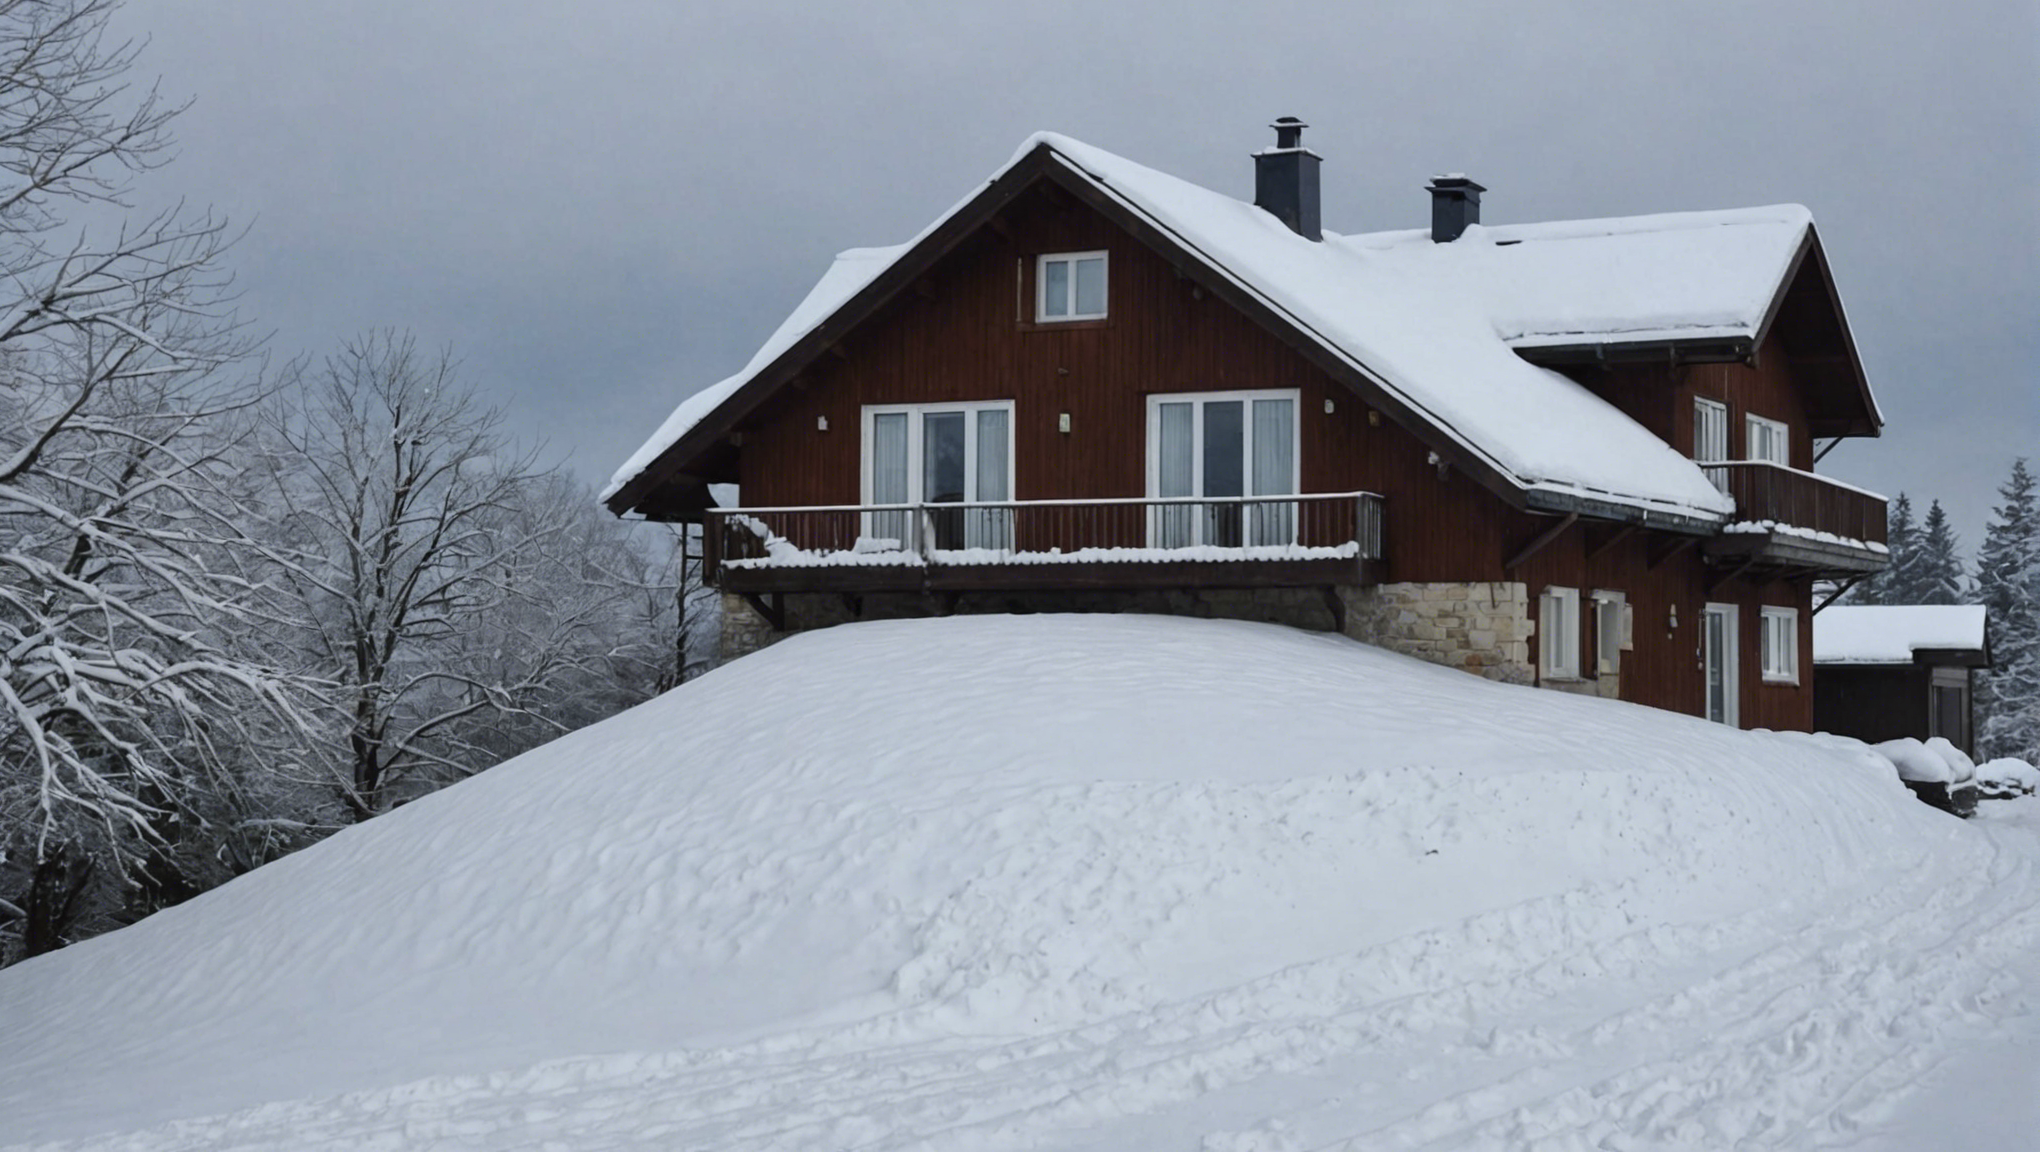 découvrez des conseils pratiques pour protéger votre toit contre les dommages liés à la neige et préserver l'intégrité de votre habitation.